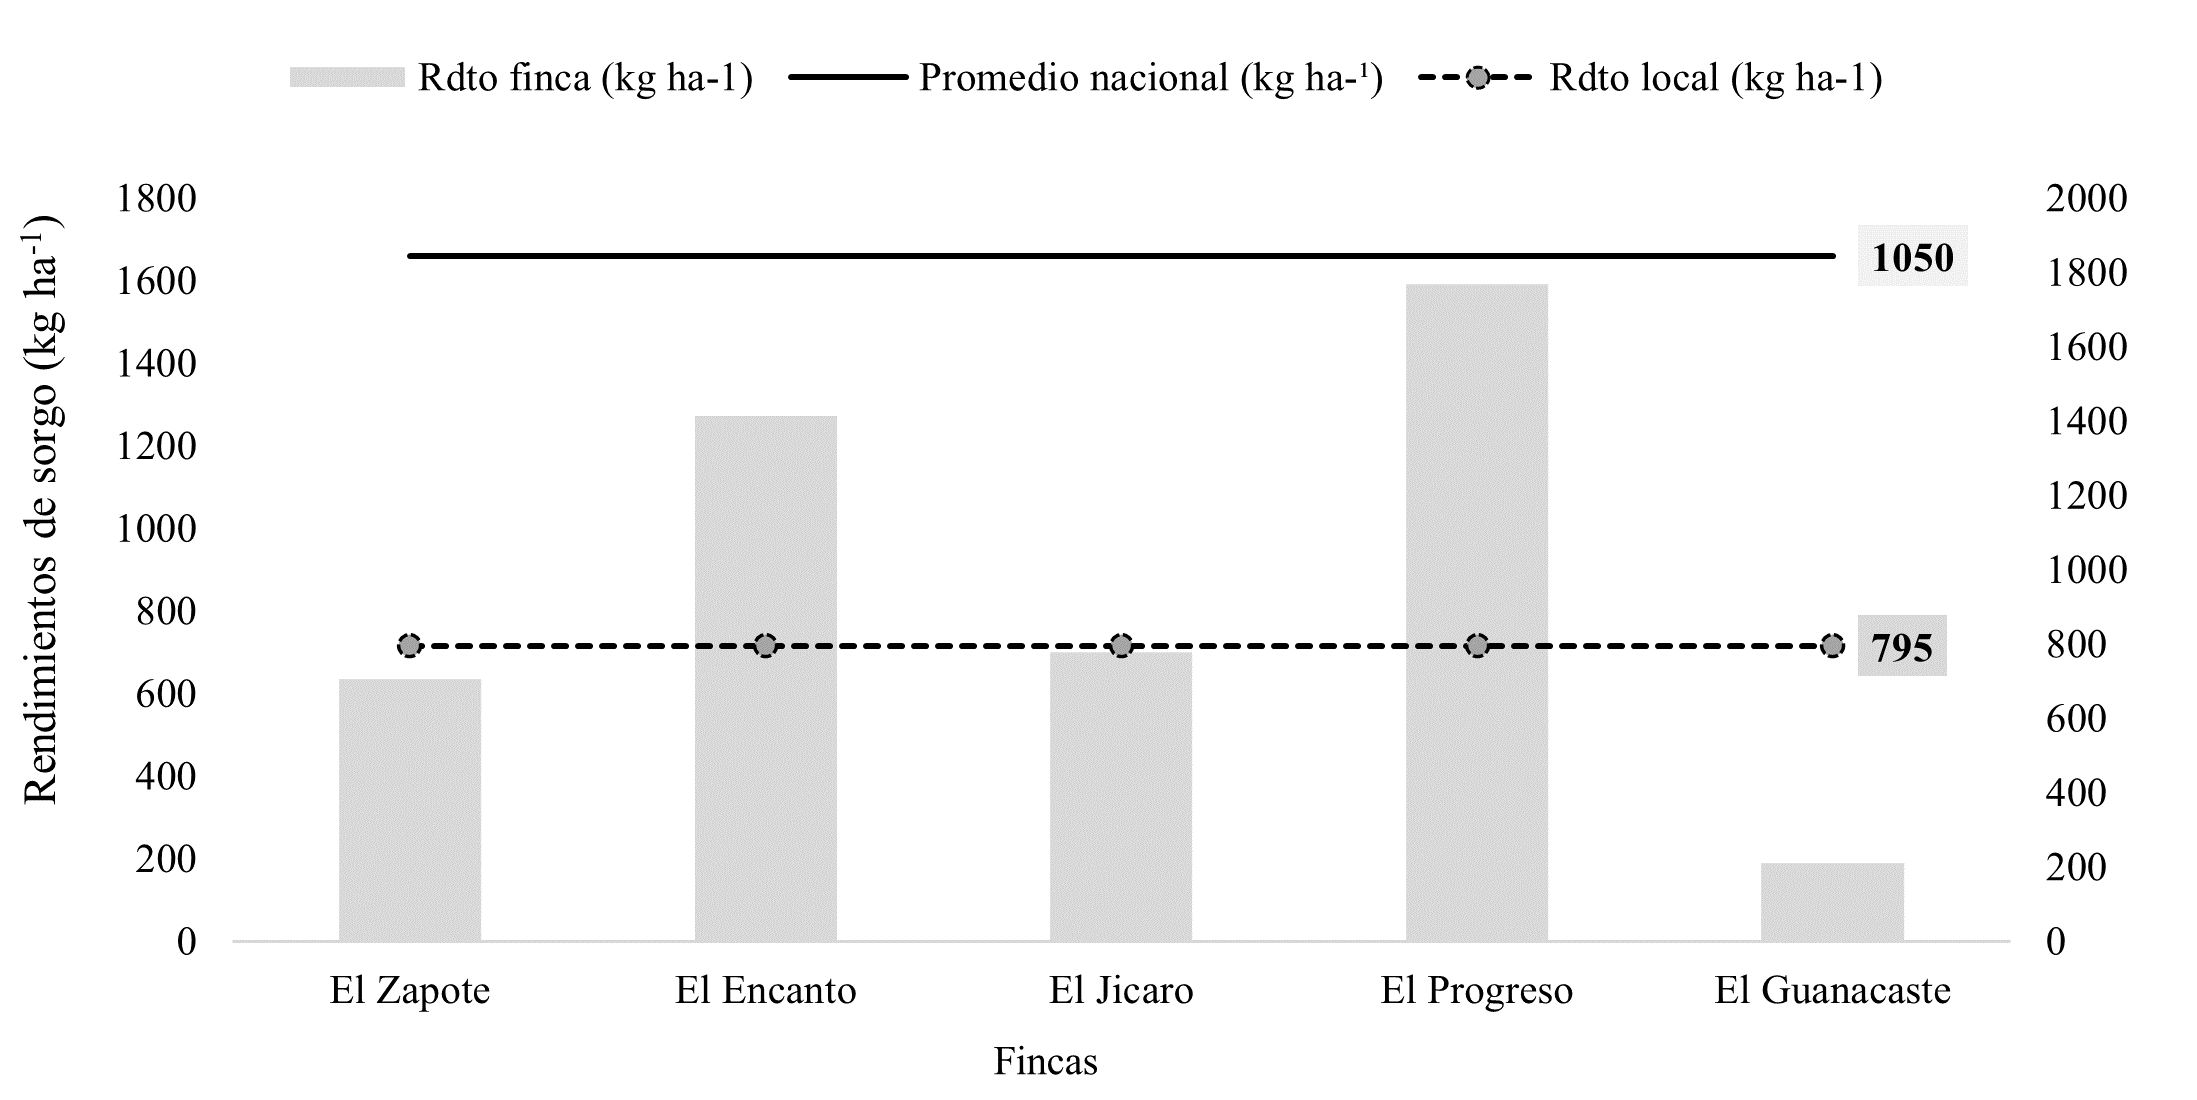 Relación del rendimiento (kg ha-1) del
cultivo de sorgo por finca en relación al promedio local y nacional.